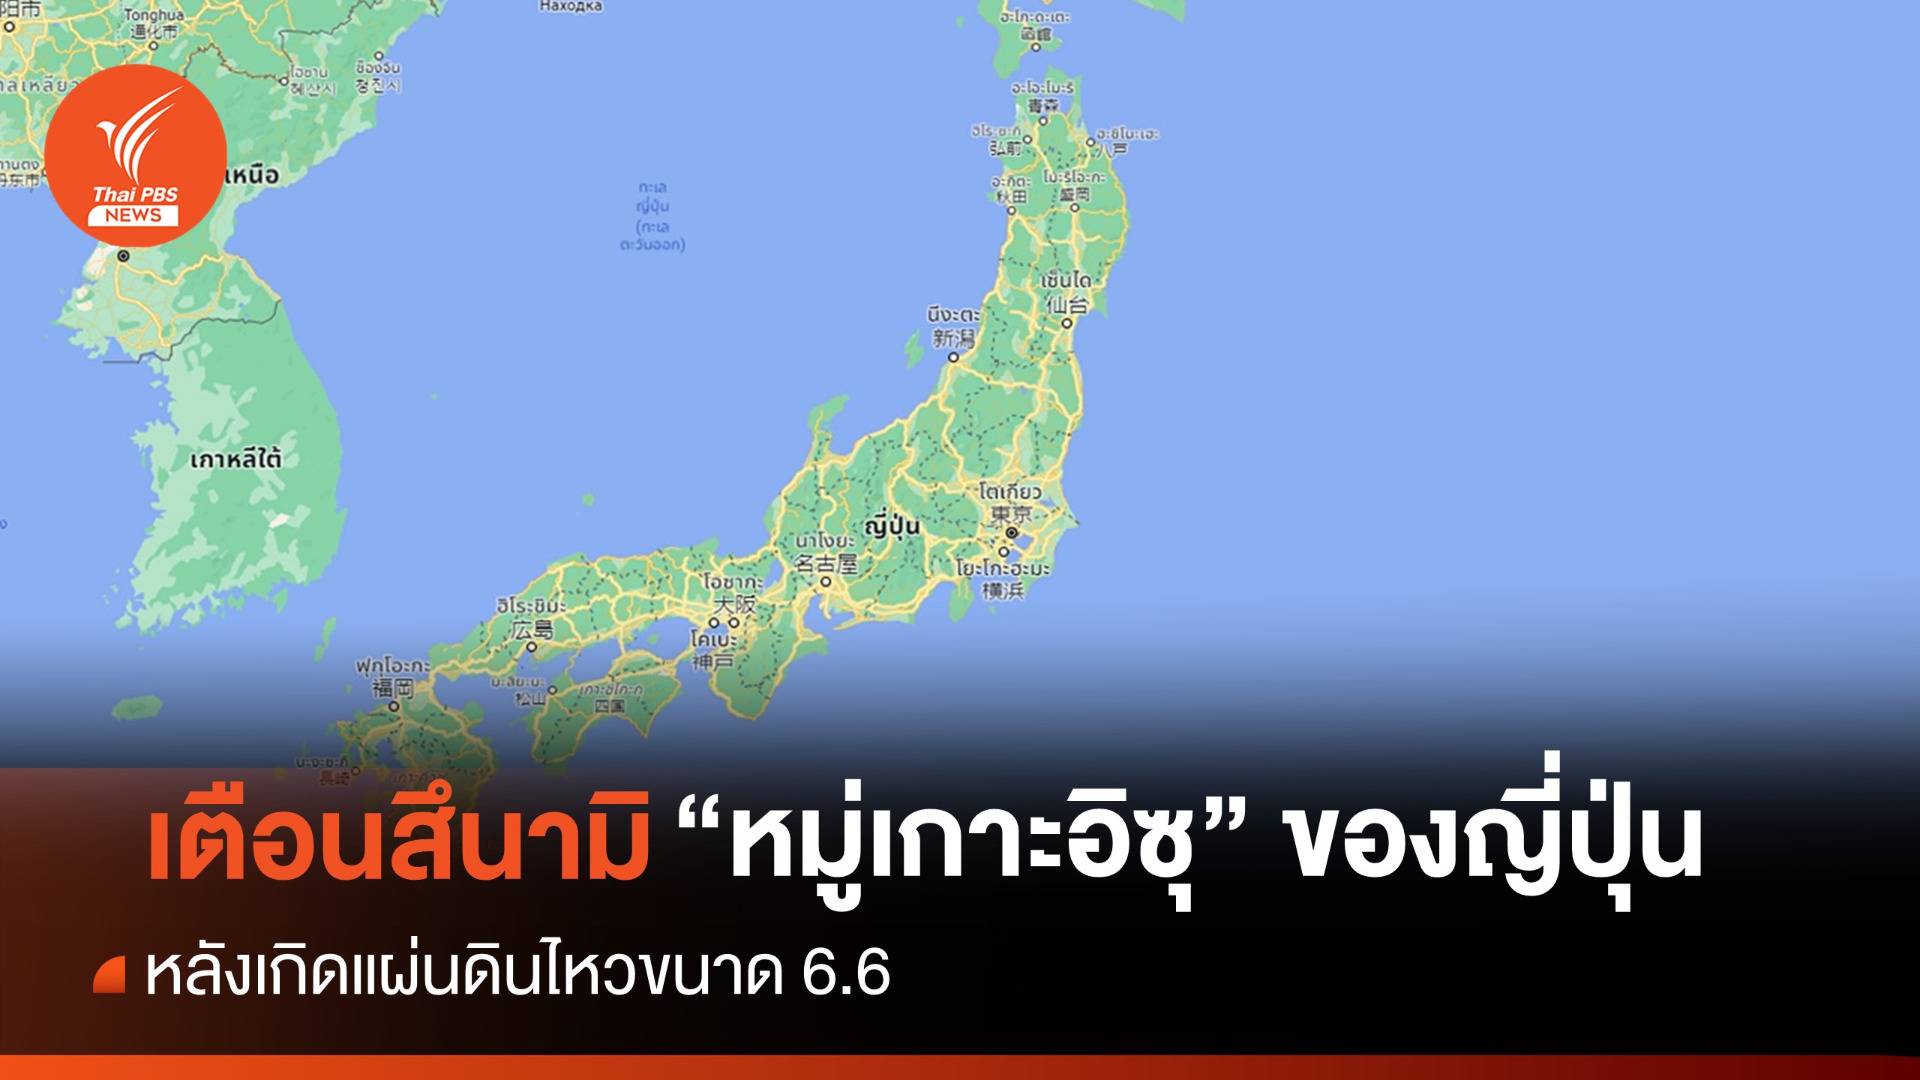 "ญี่ปุ่น" เตือนสึนามิหมู่เกาะอิซุ หลังเกิดแผ่นดินไหว 6.6